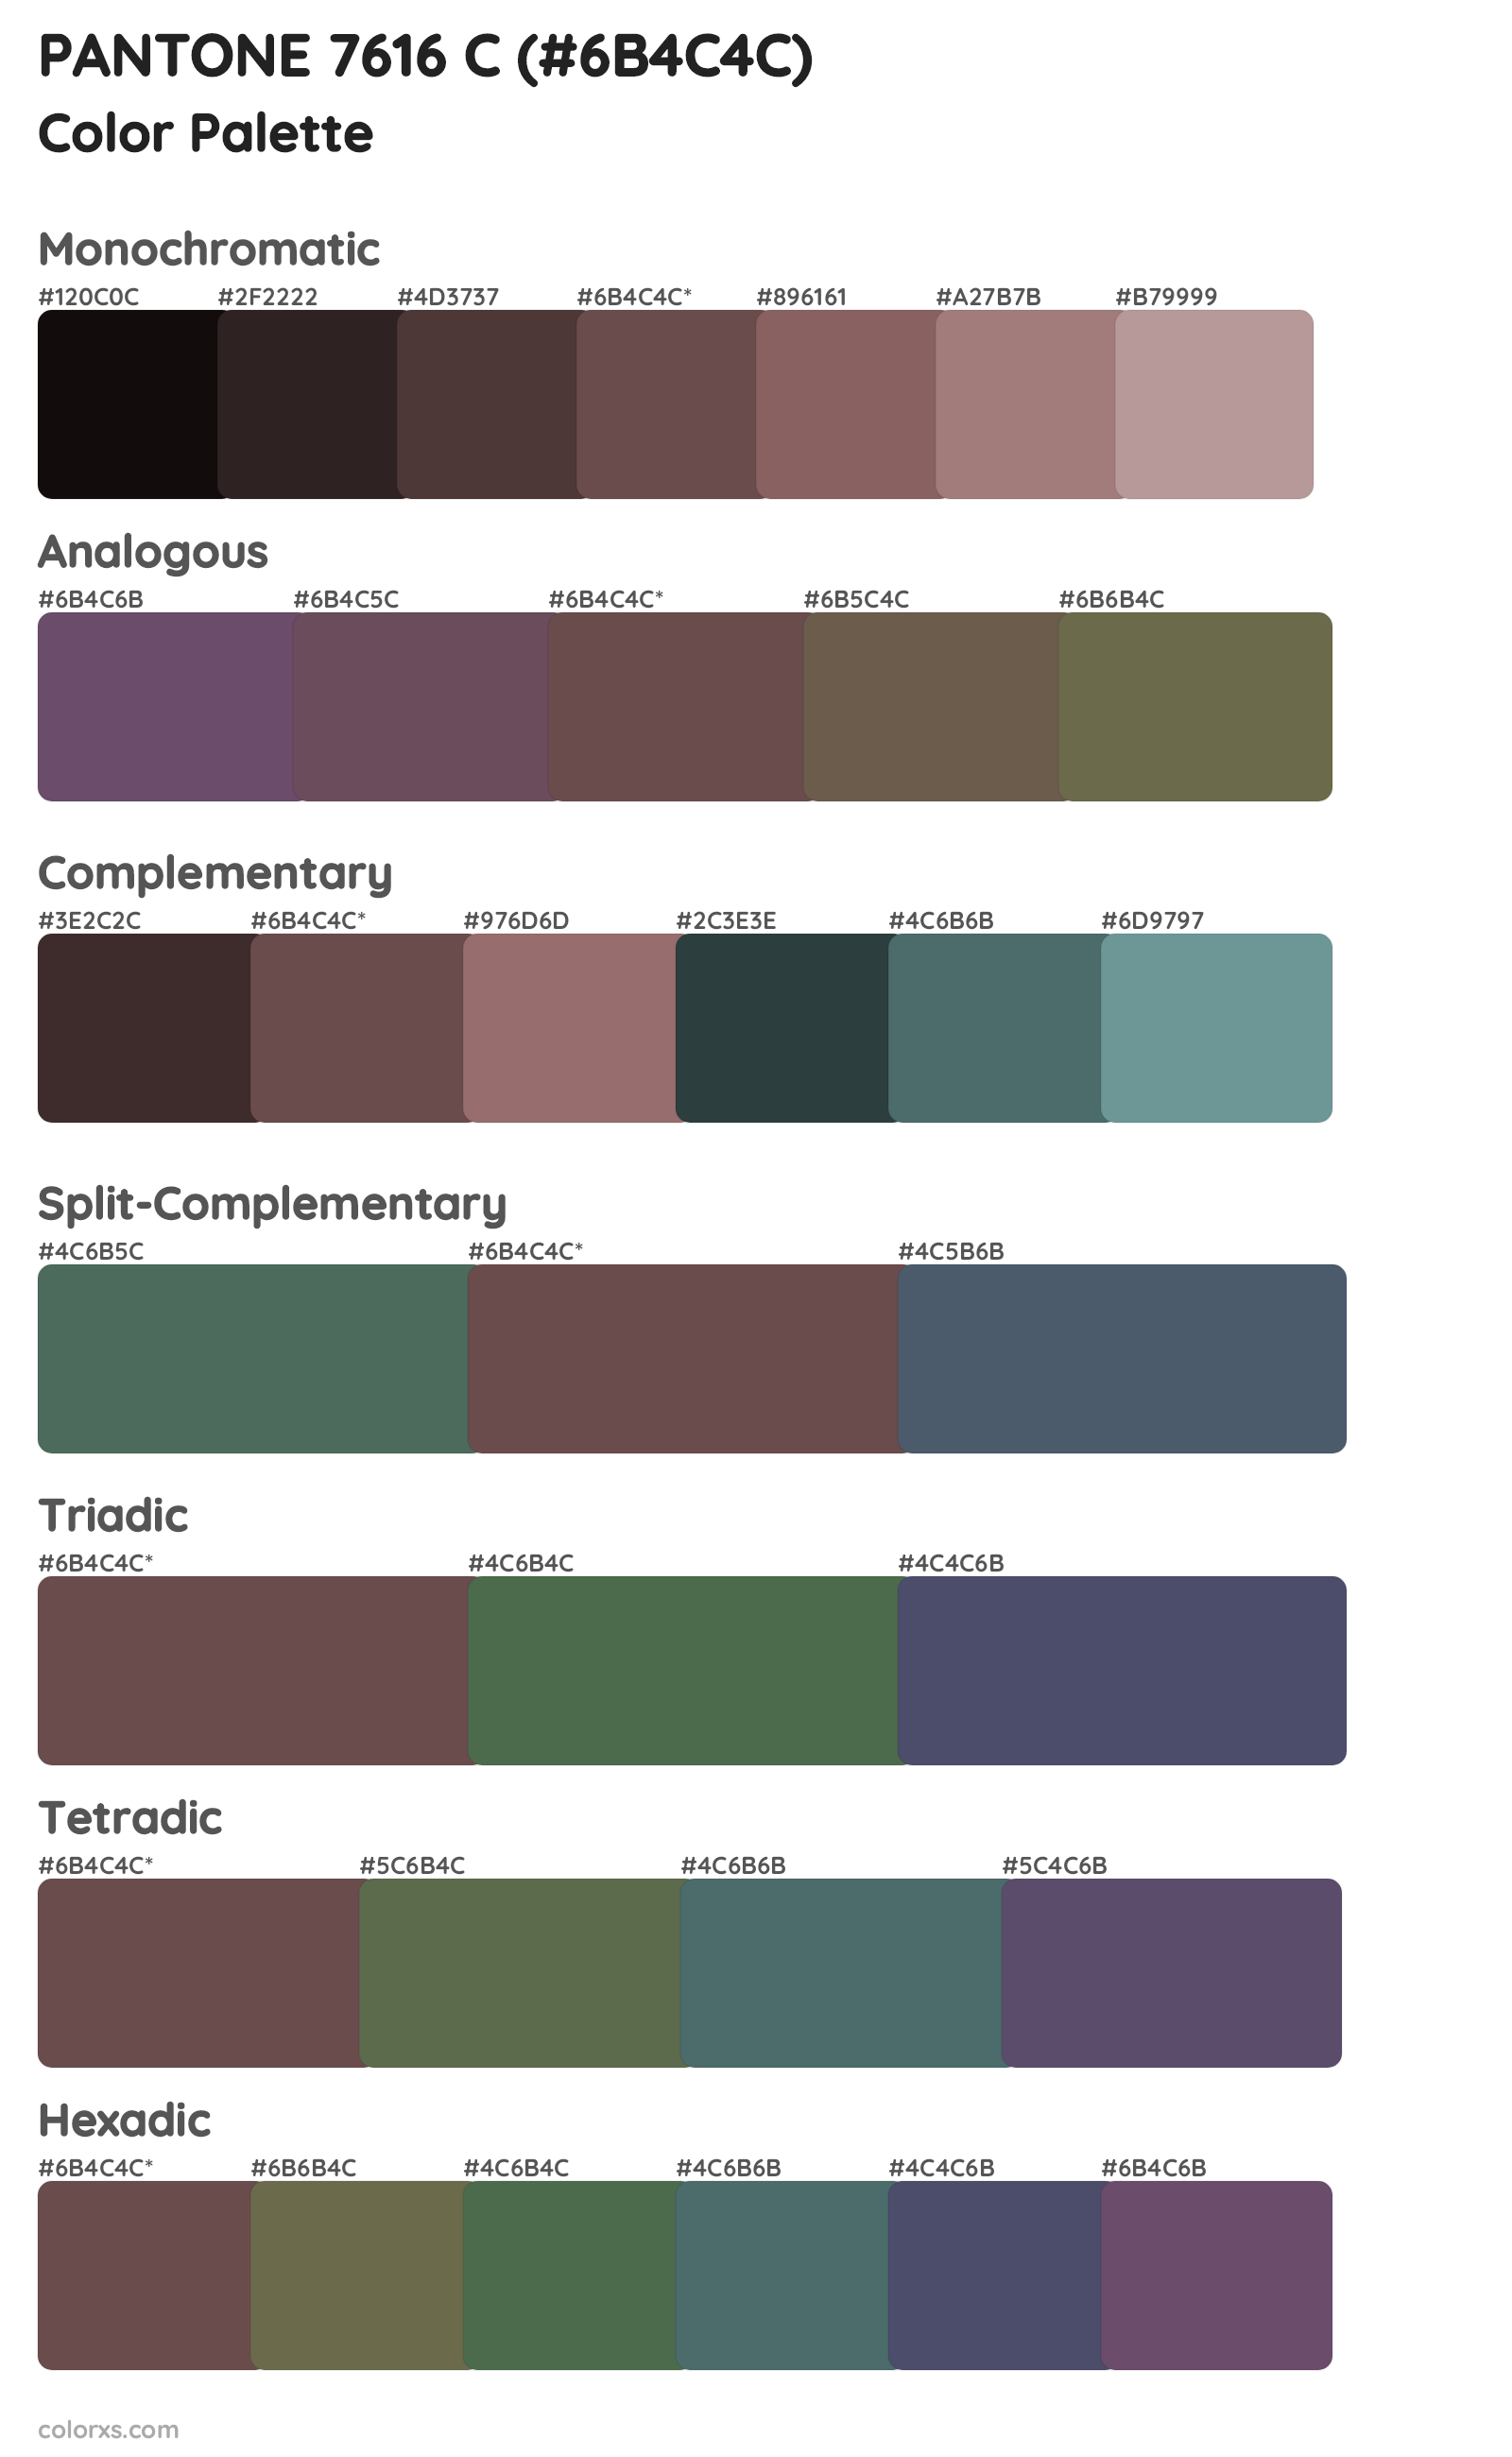 PANTONE 7616 C Color Scheme Palettes